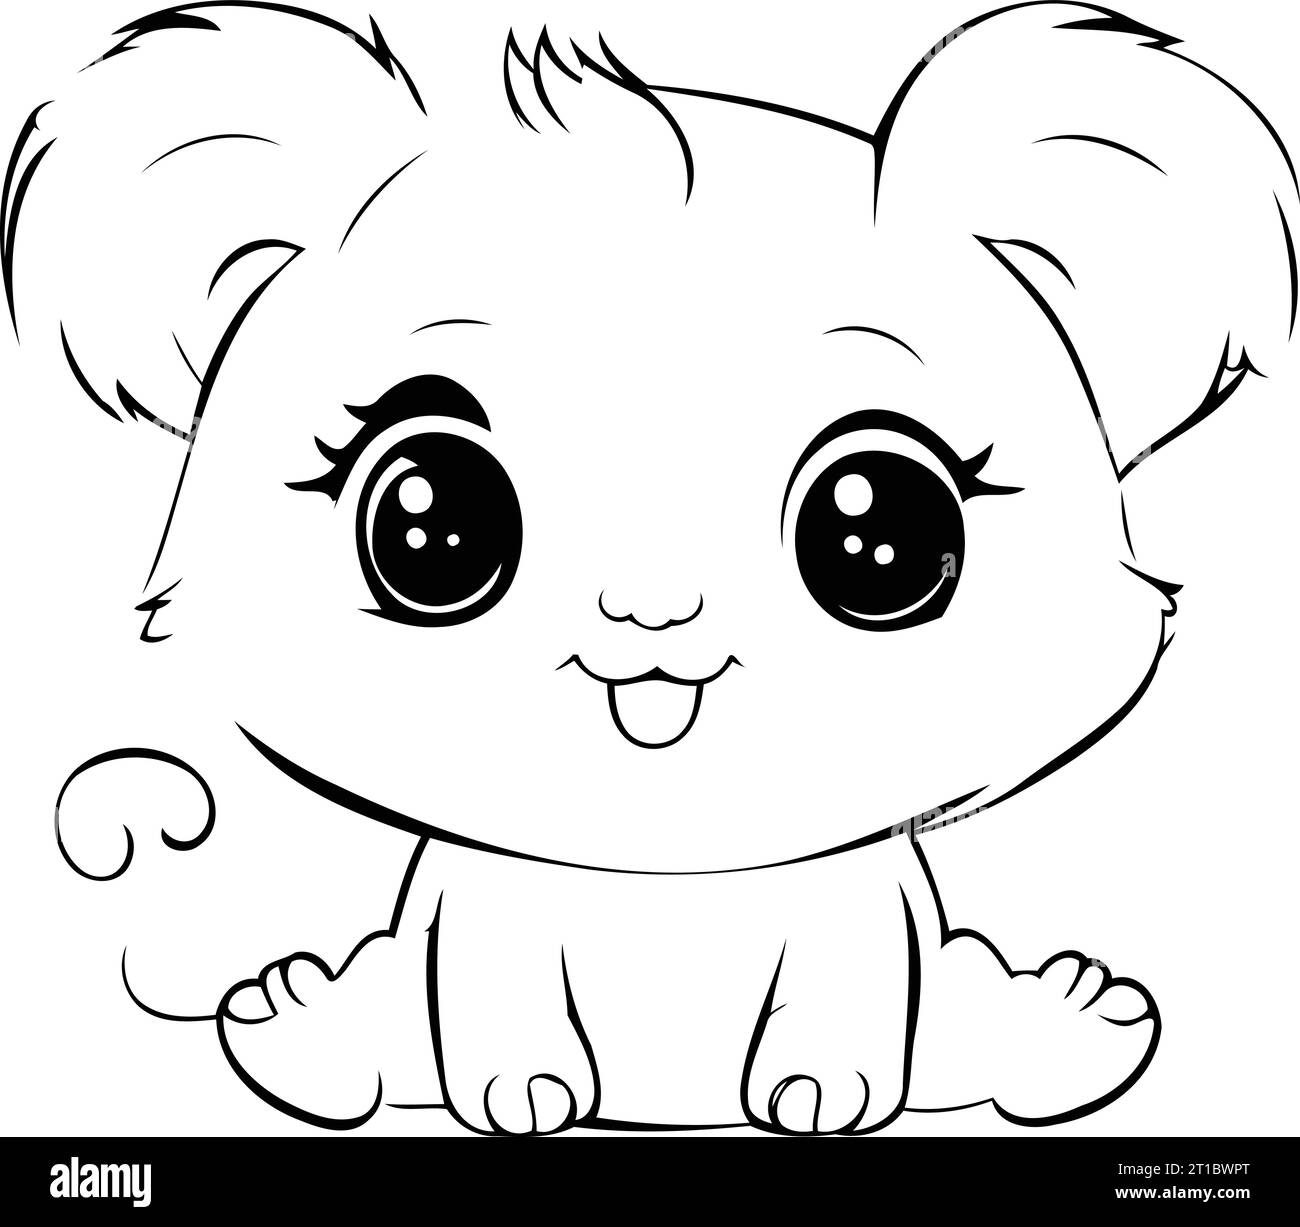 Cute Cartoon Koala. Vector Illustration for Coloring Book Stock Vector ...